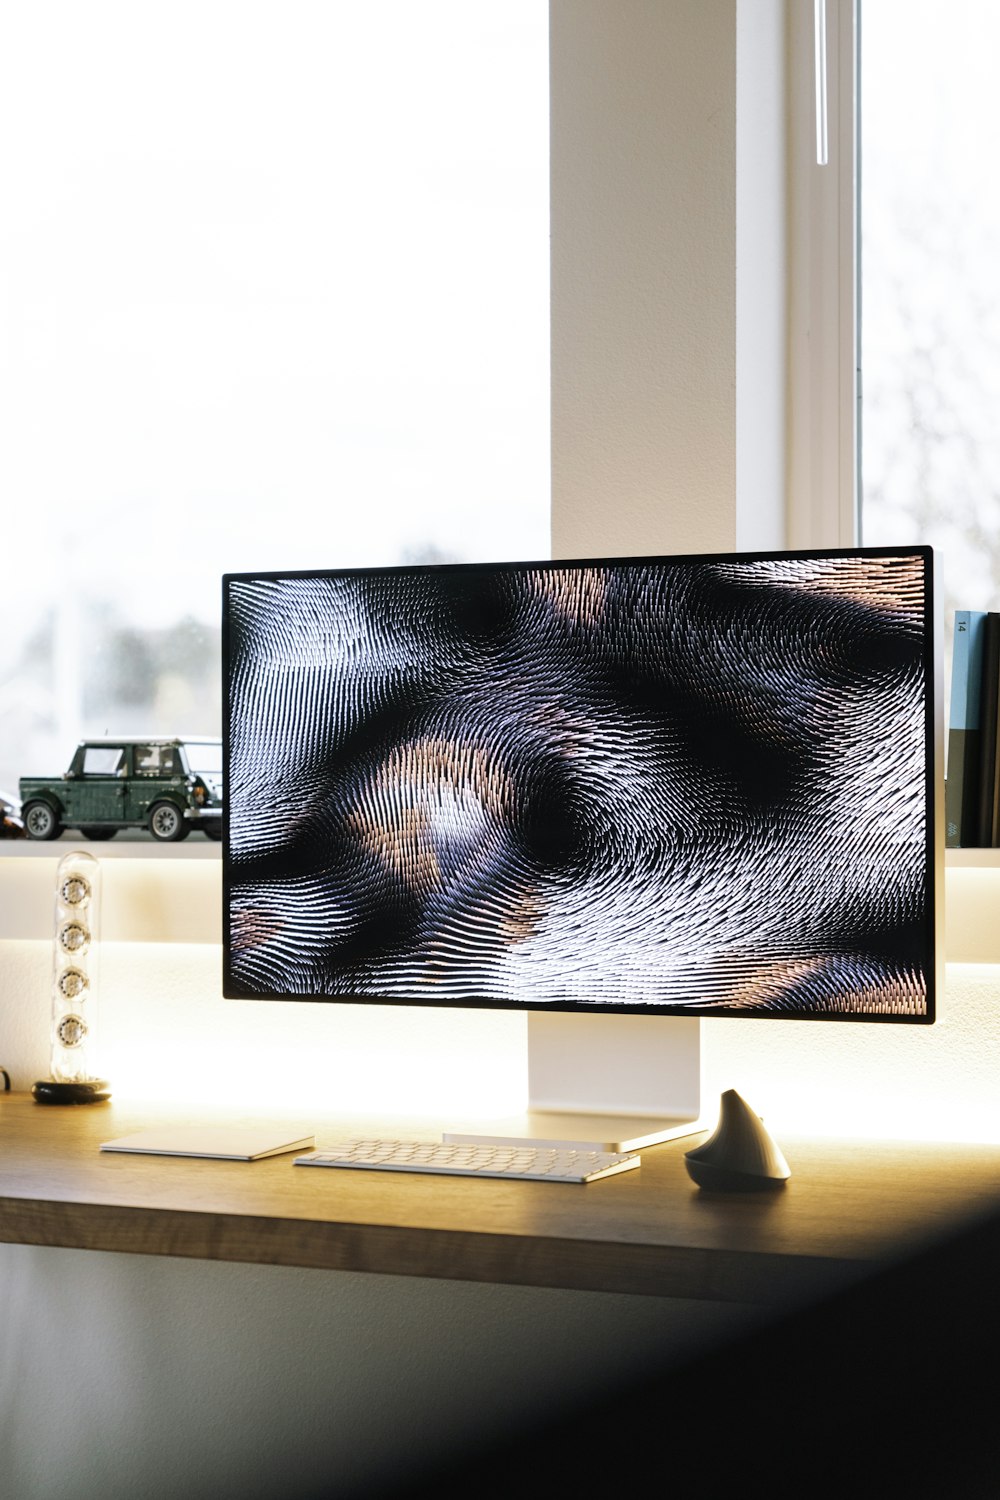 monitor de computador de tela plana preta na mesa de madeira marrom